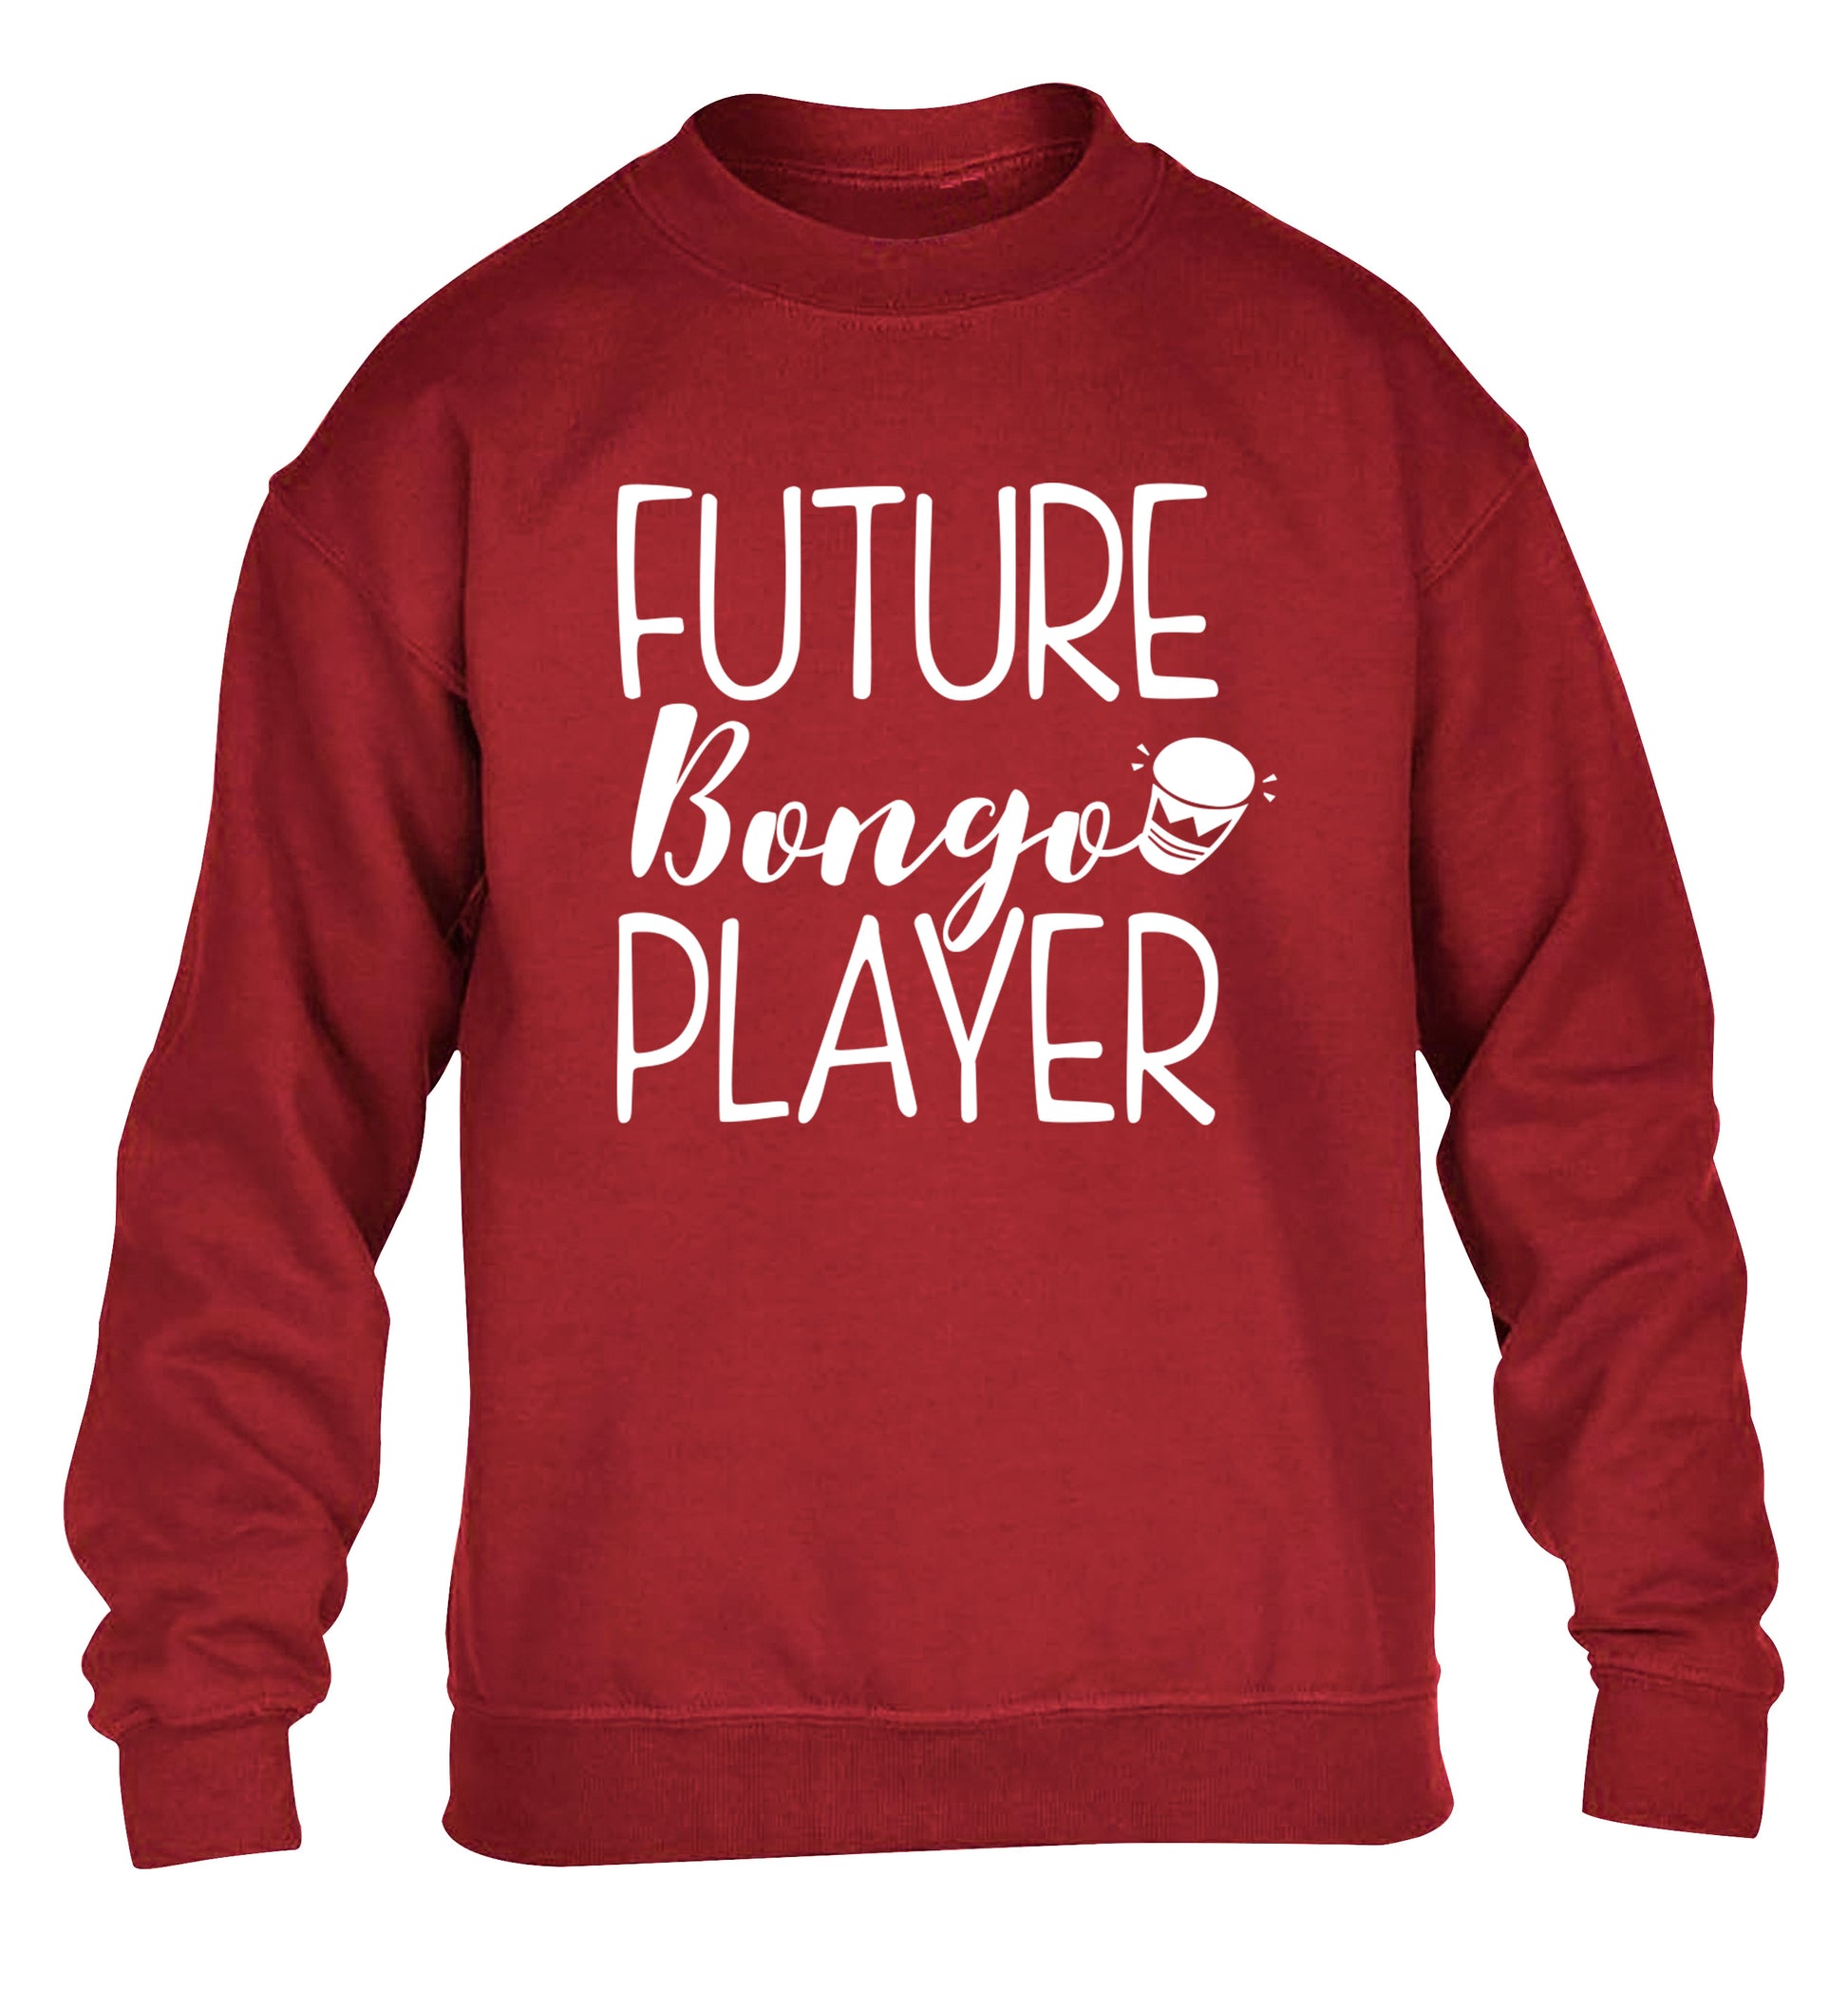 Future bongo player children's grey sweater 12-14 Years